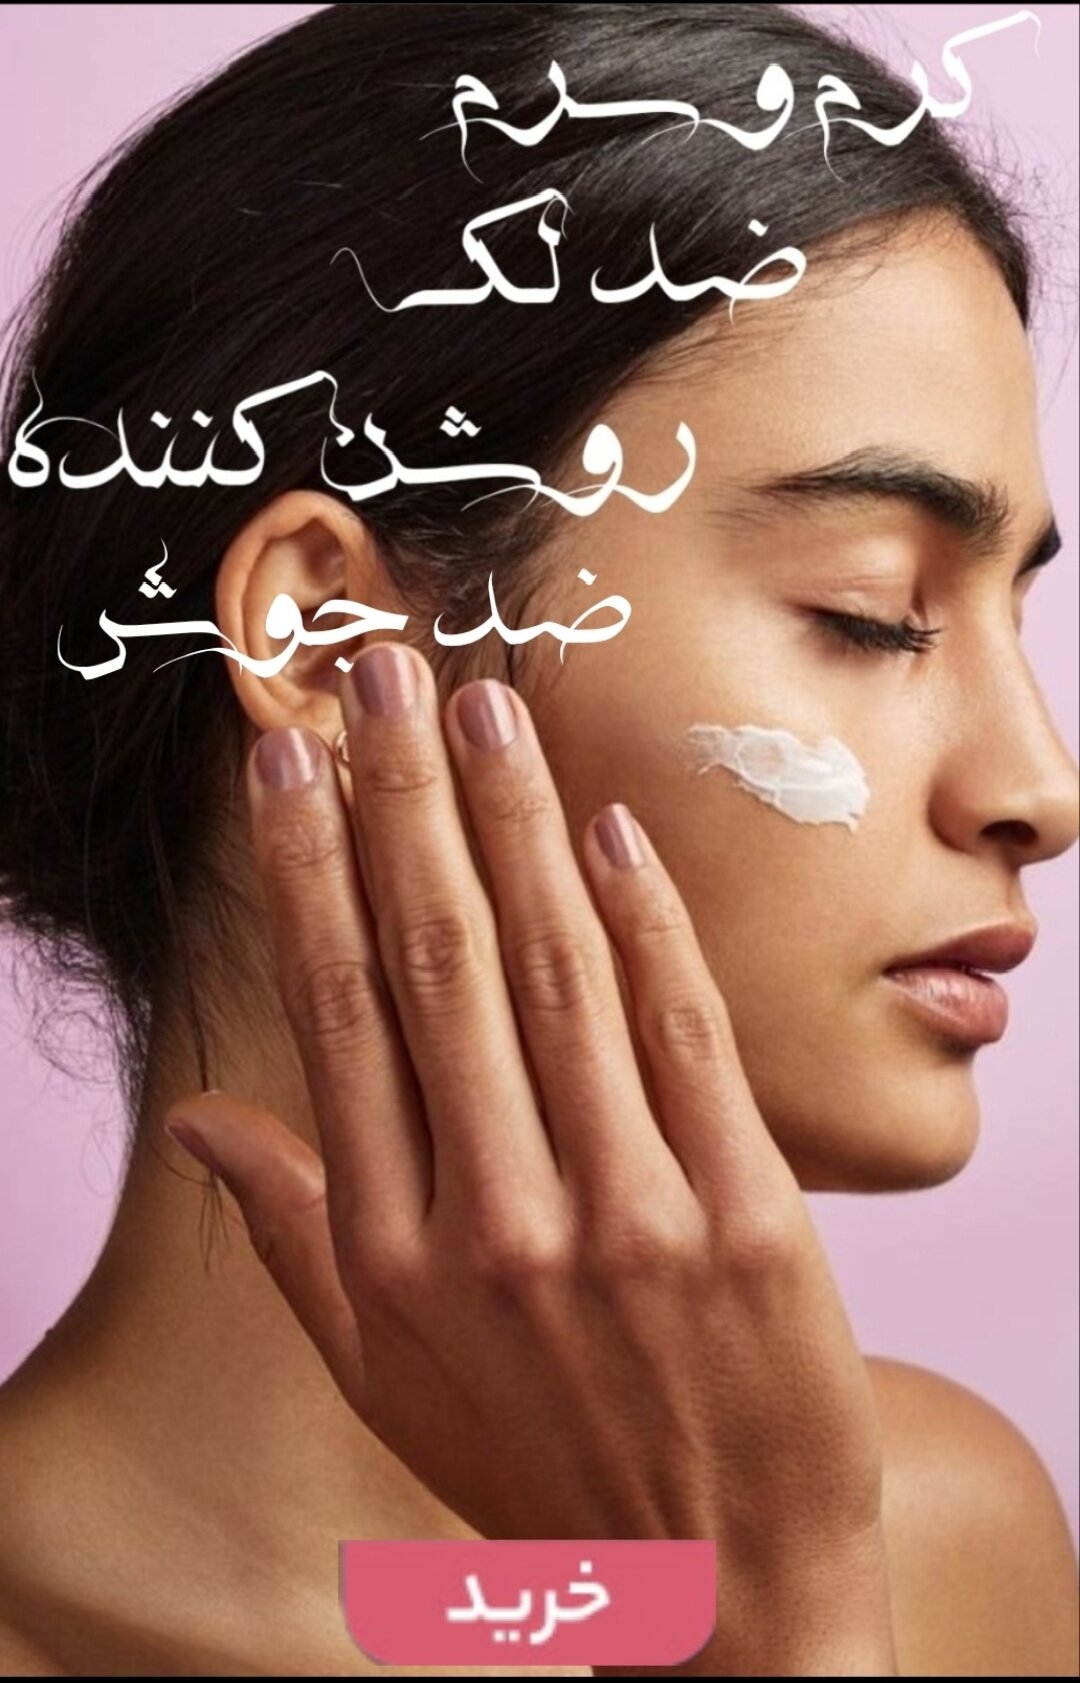 خرید آنلاین انواع کرم،سرم ضد لک و روشن کننده پوست برندهای اصلی و اورجینال-فروشگاه اینترنتی آرایشی بهداشتی آزارو در شیراز-ارسال به سراسر کشور